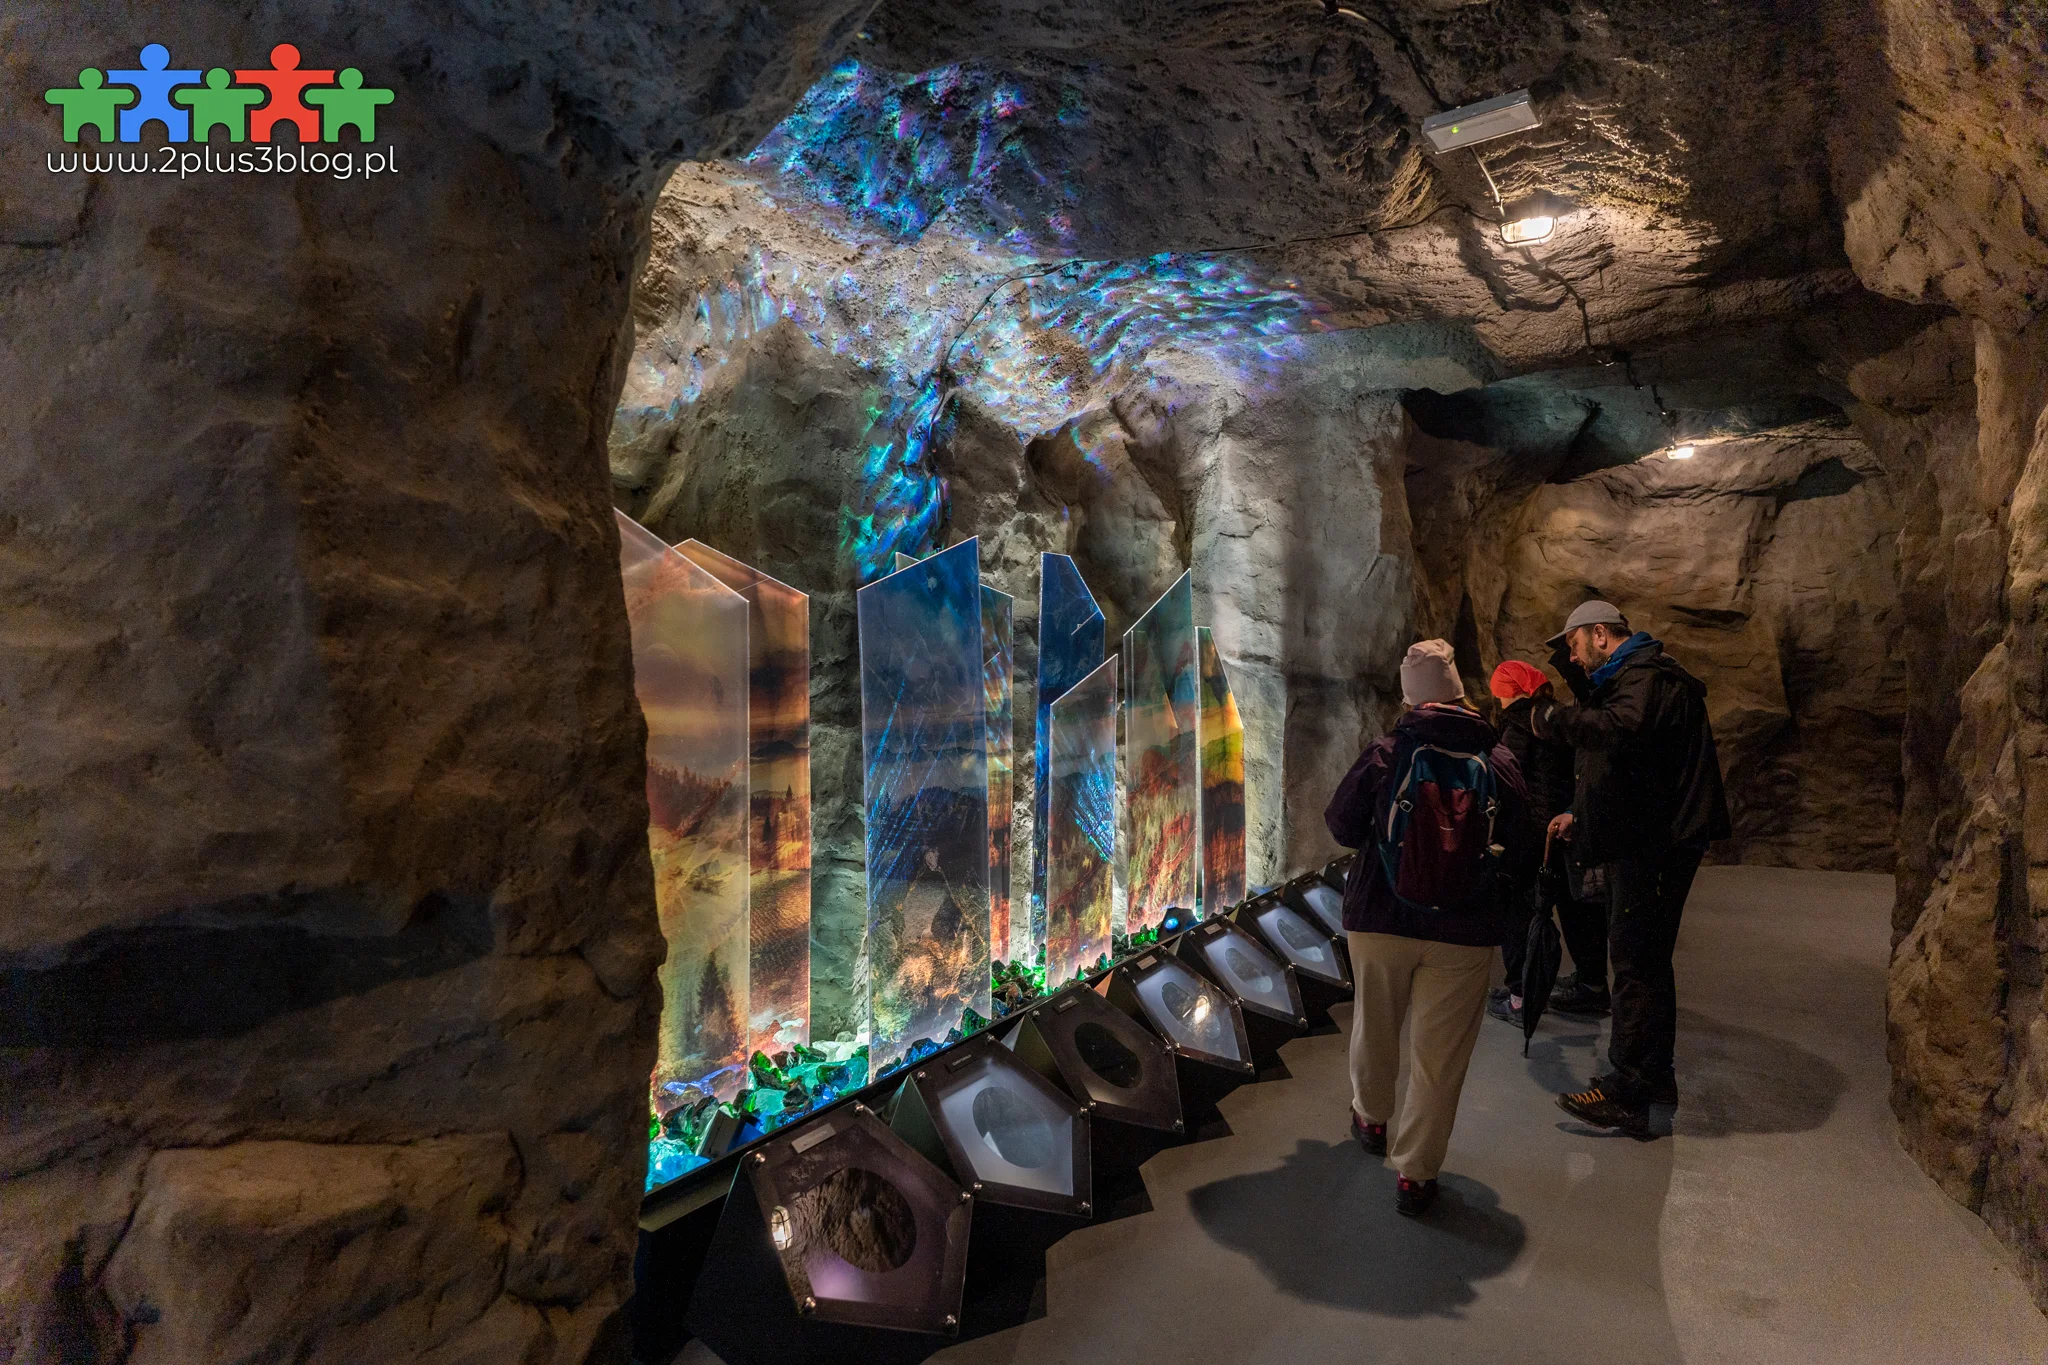 Nowa i obecnie jedna z największych atrakcji turystycznych Podhala - "Brama w Gorce" została właśnie otwarta dla gości!